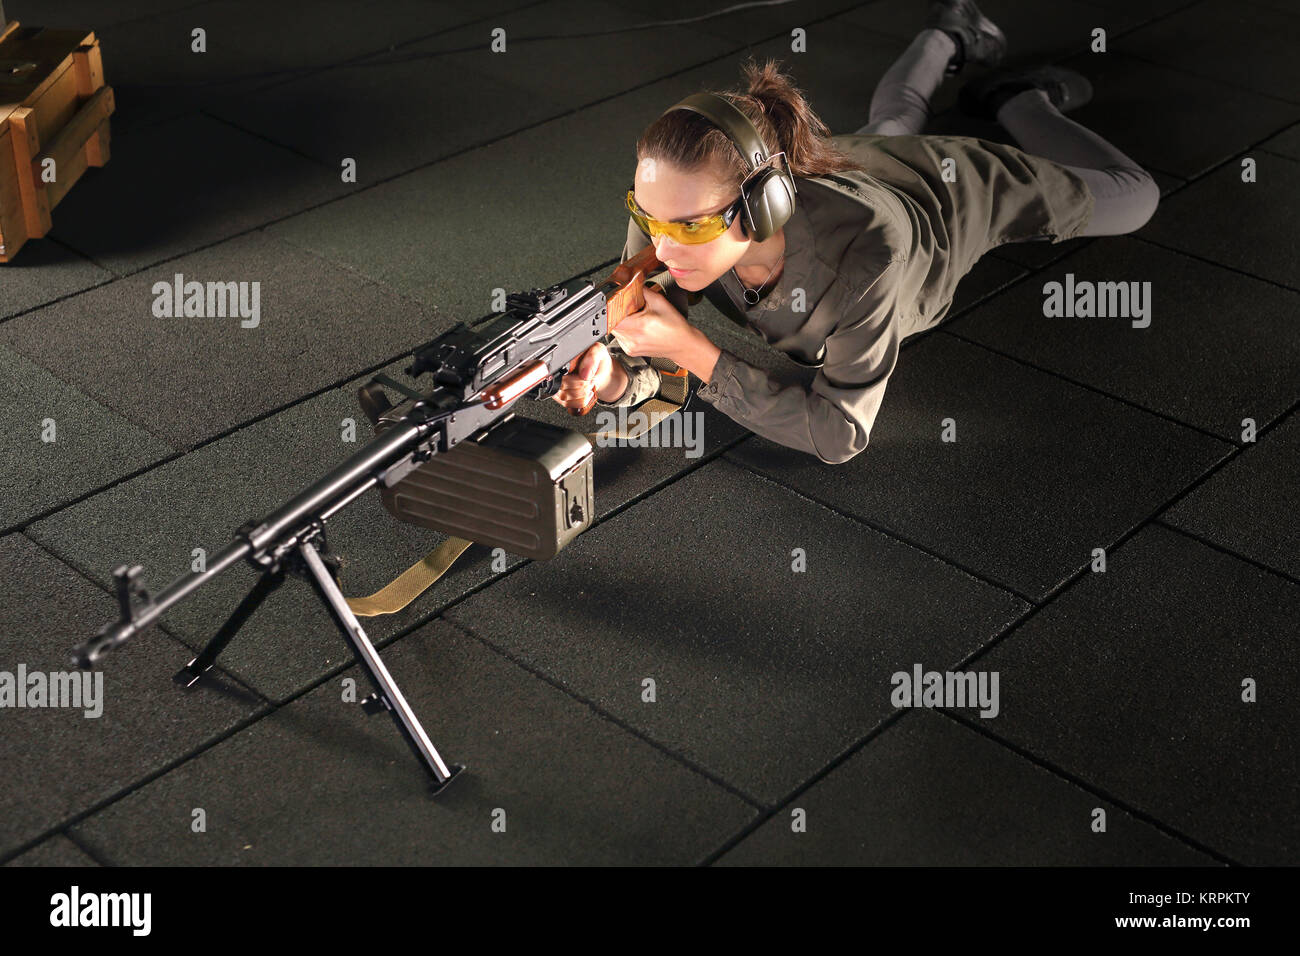 Strzelnica. Kobieta z karabinem maszynowym. Strzelectwo sportowe. Foto Stock